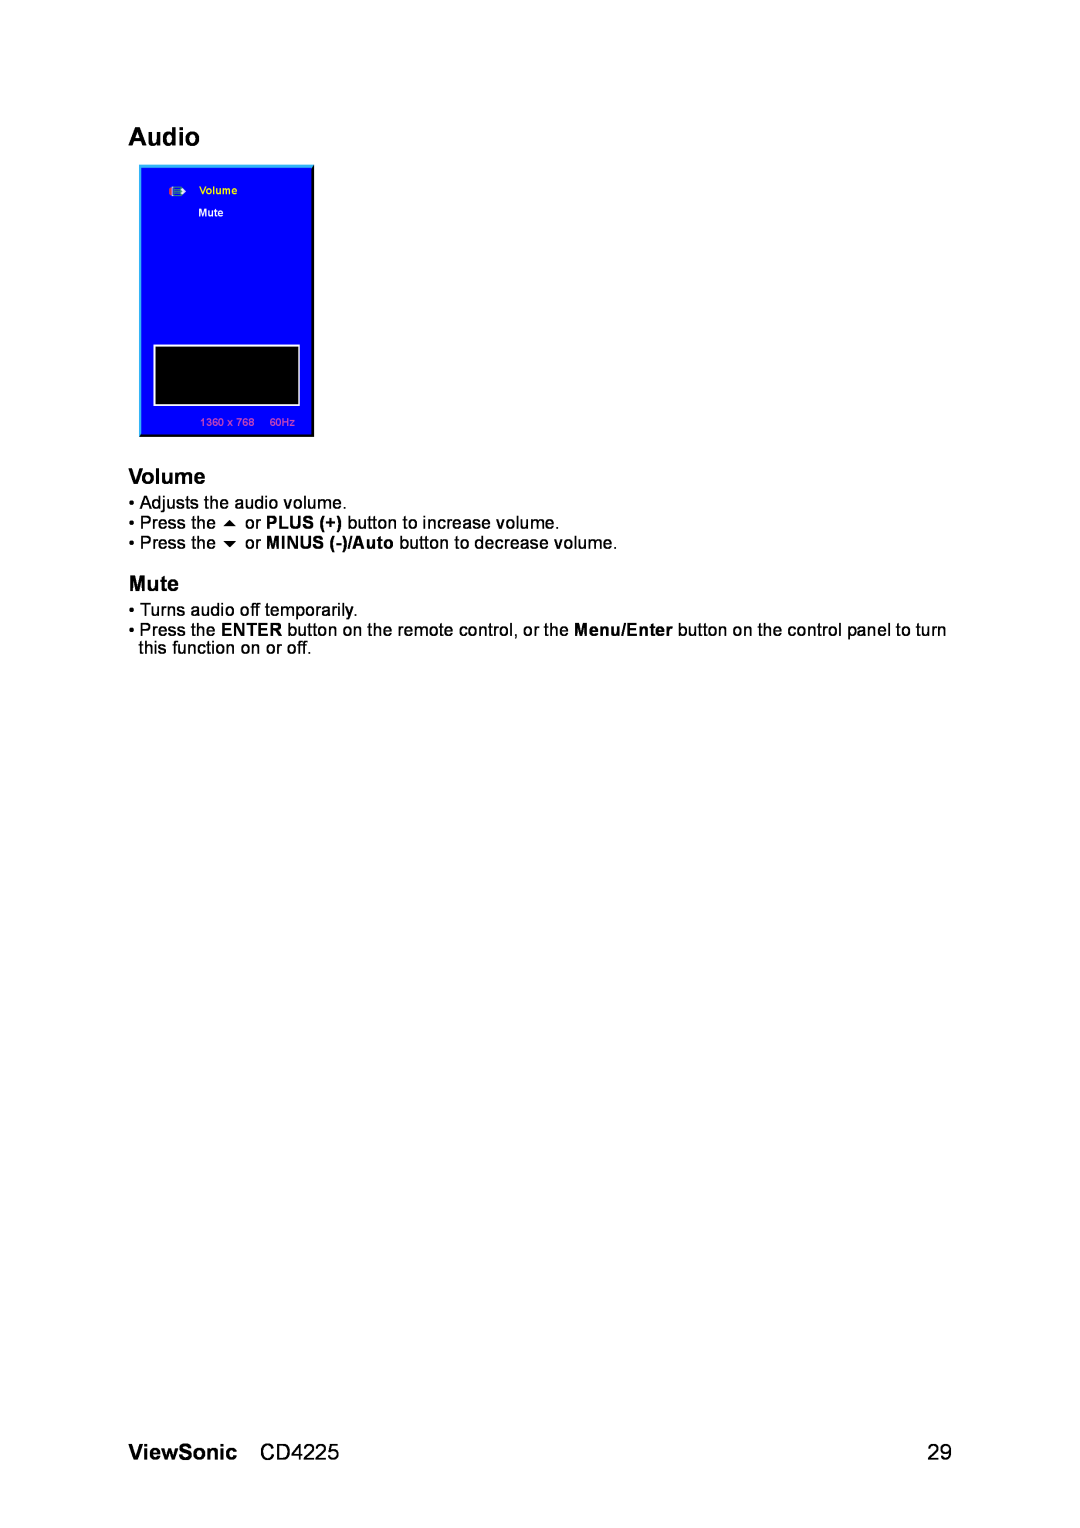 ViewSonic manual Audio, Volume, Mute, ViewSonic CD4225, 1360 x 768 60Hz 